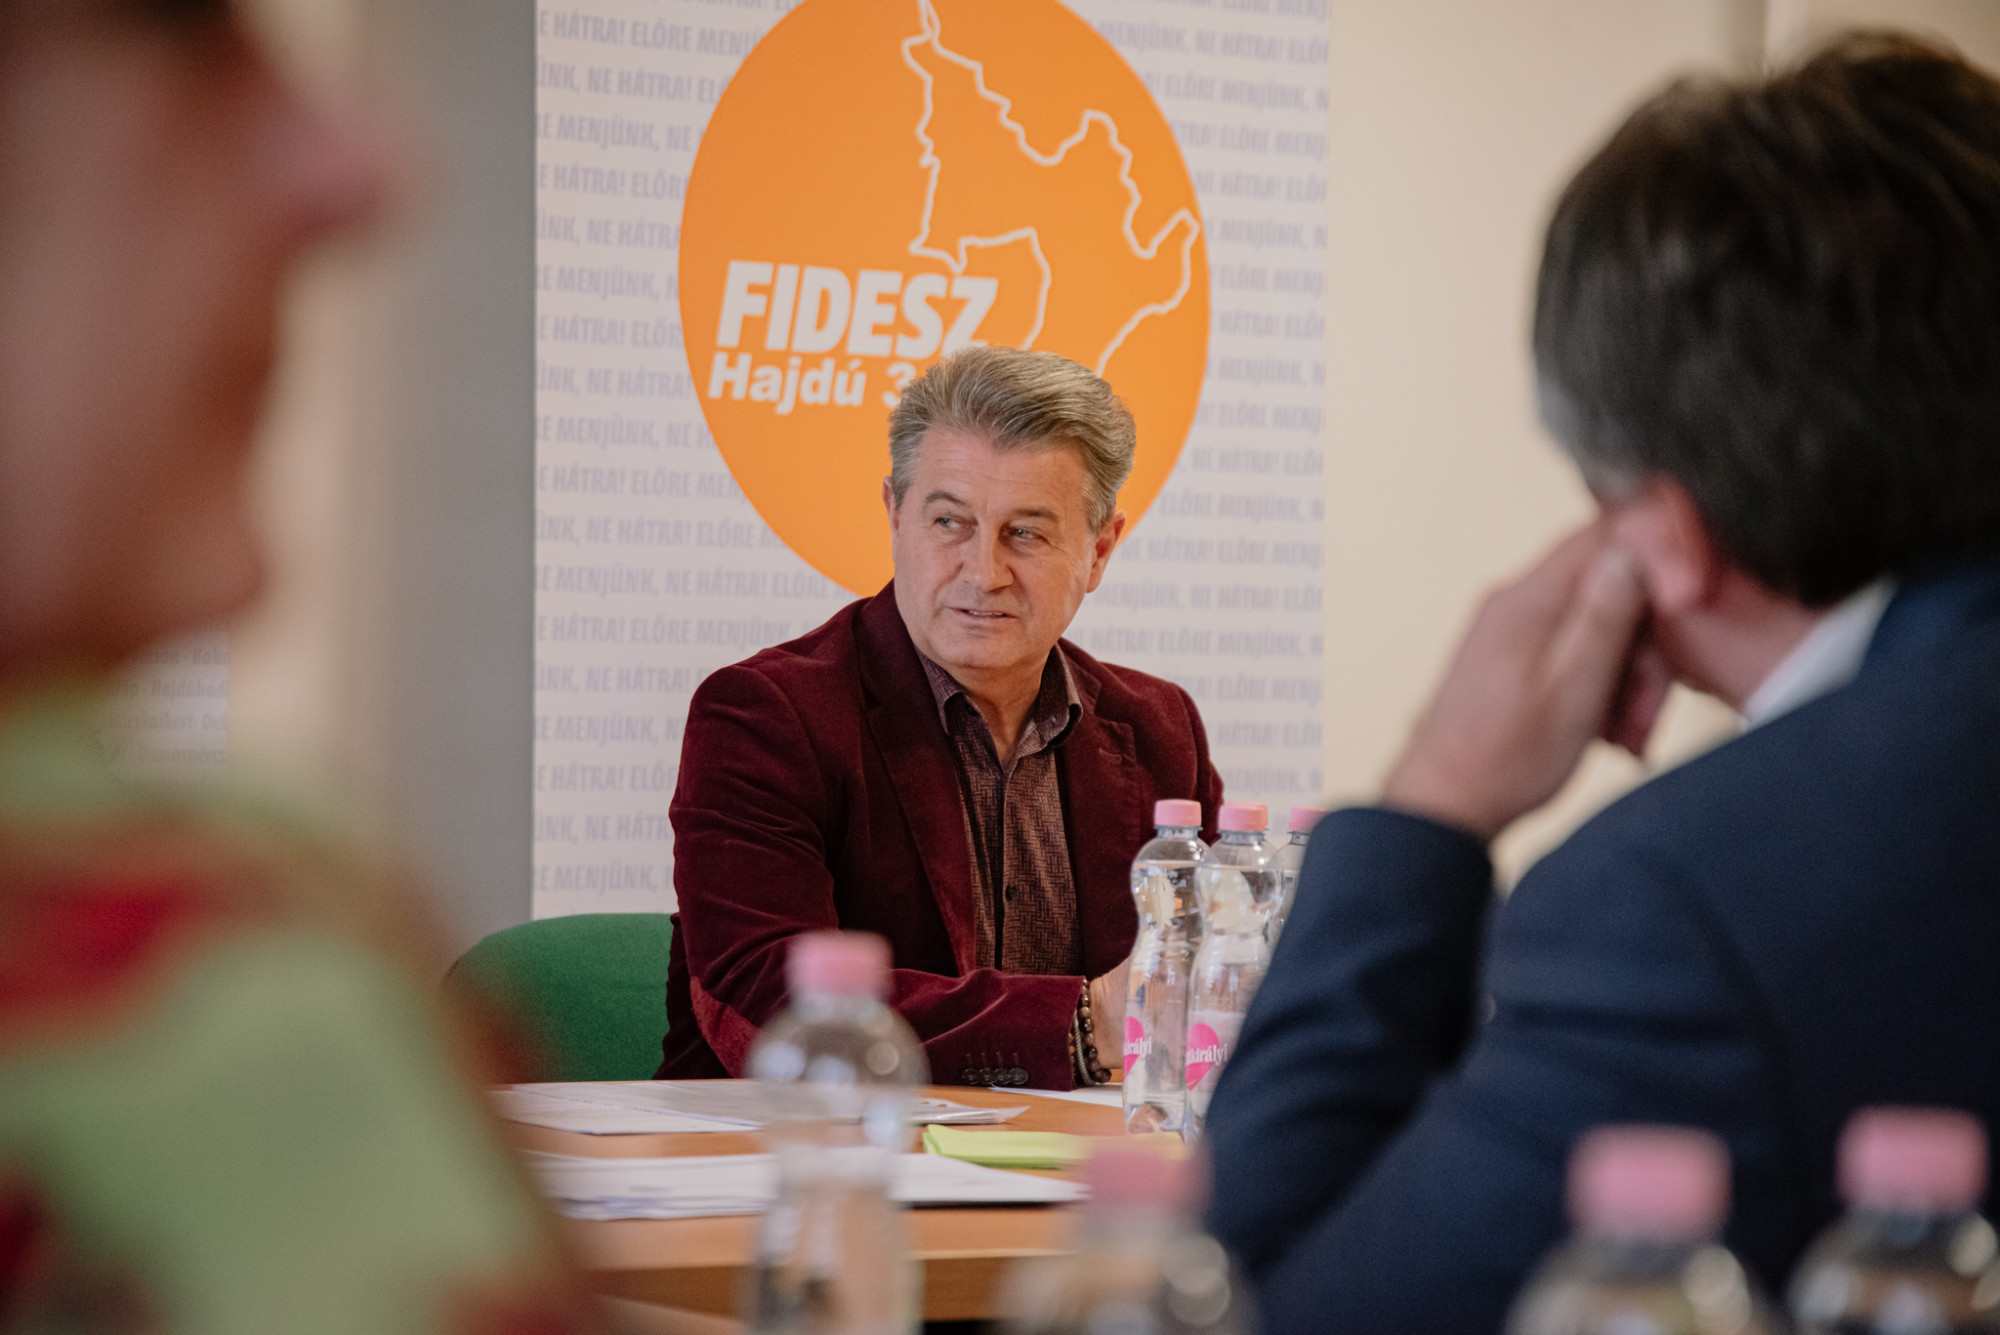 A Fidesz képviselője is elismerte, hogy a költségvetés több sebből vérzik, de most nem lehet jobbat csinálni